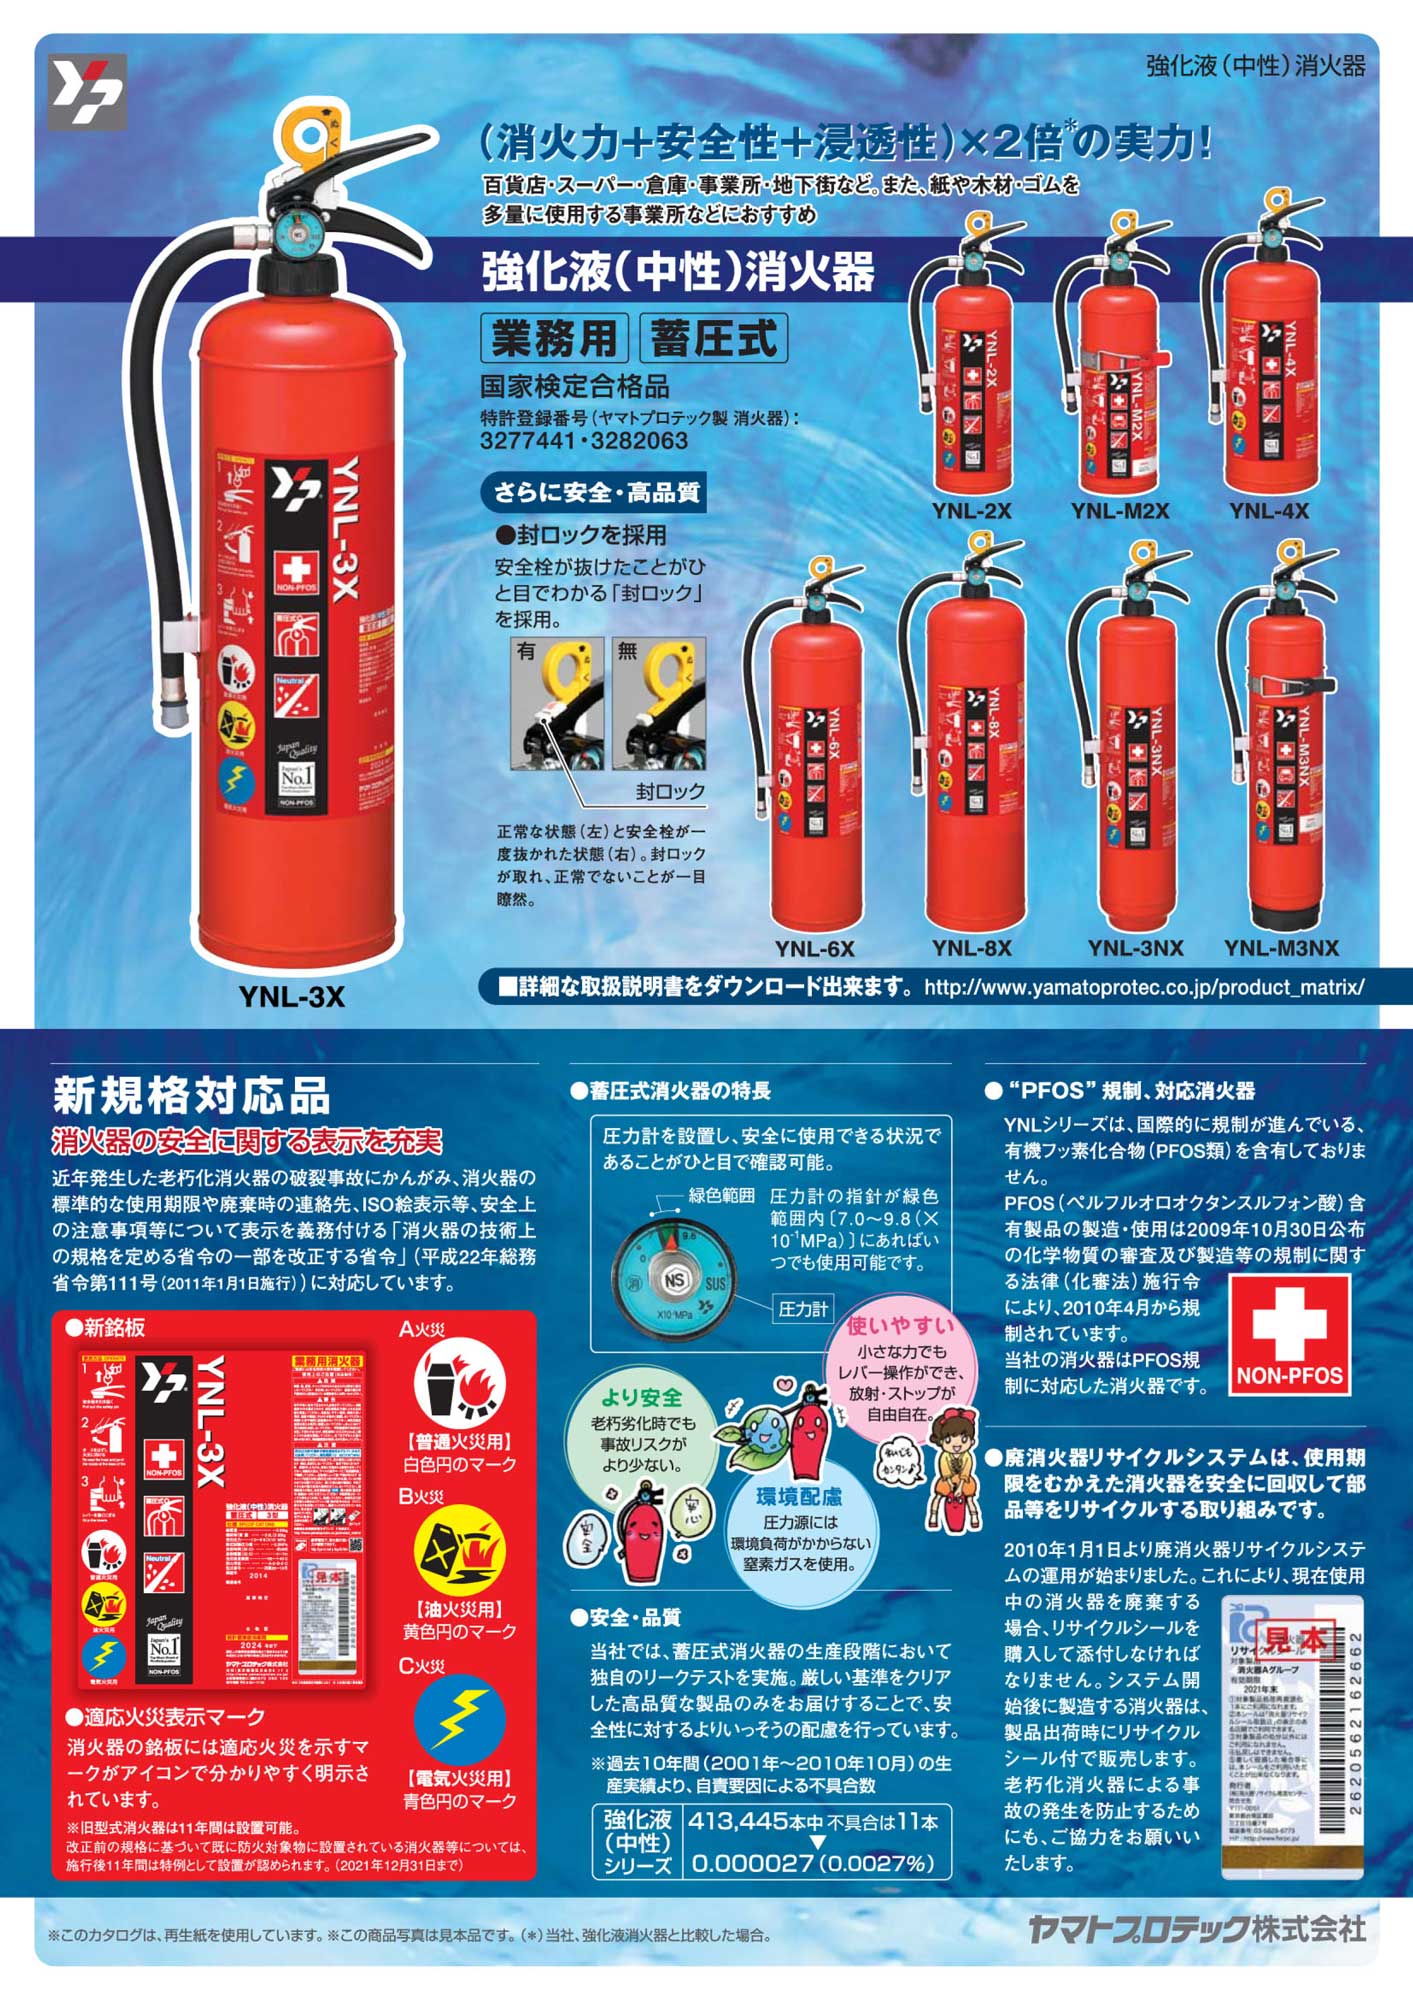 超歓迎 ヤマト 中性強化液消火器４型 1本 品番 Ynl 4x 年最新海外 Www Biogardasia Com